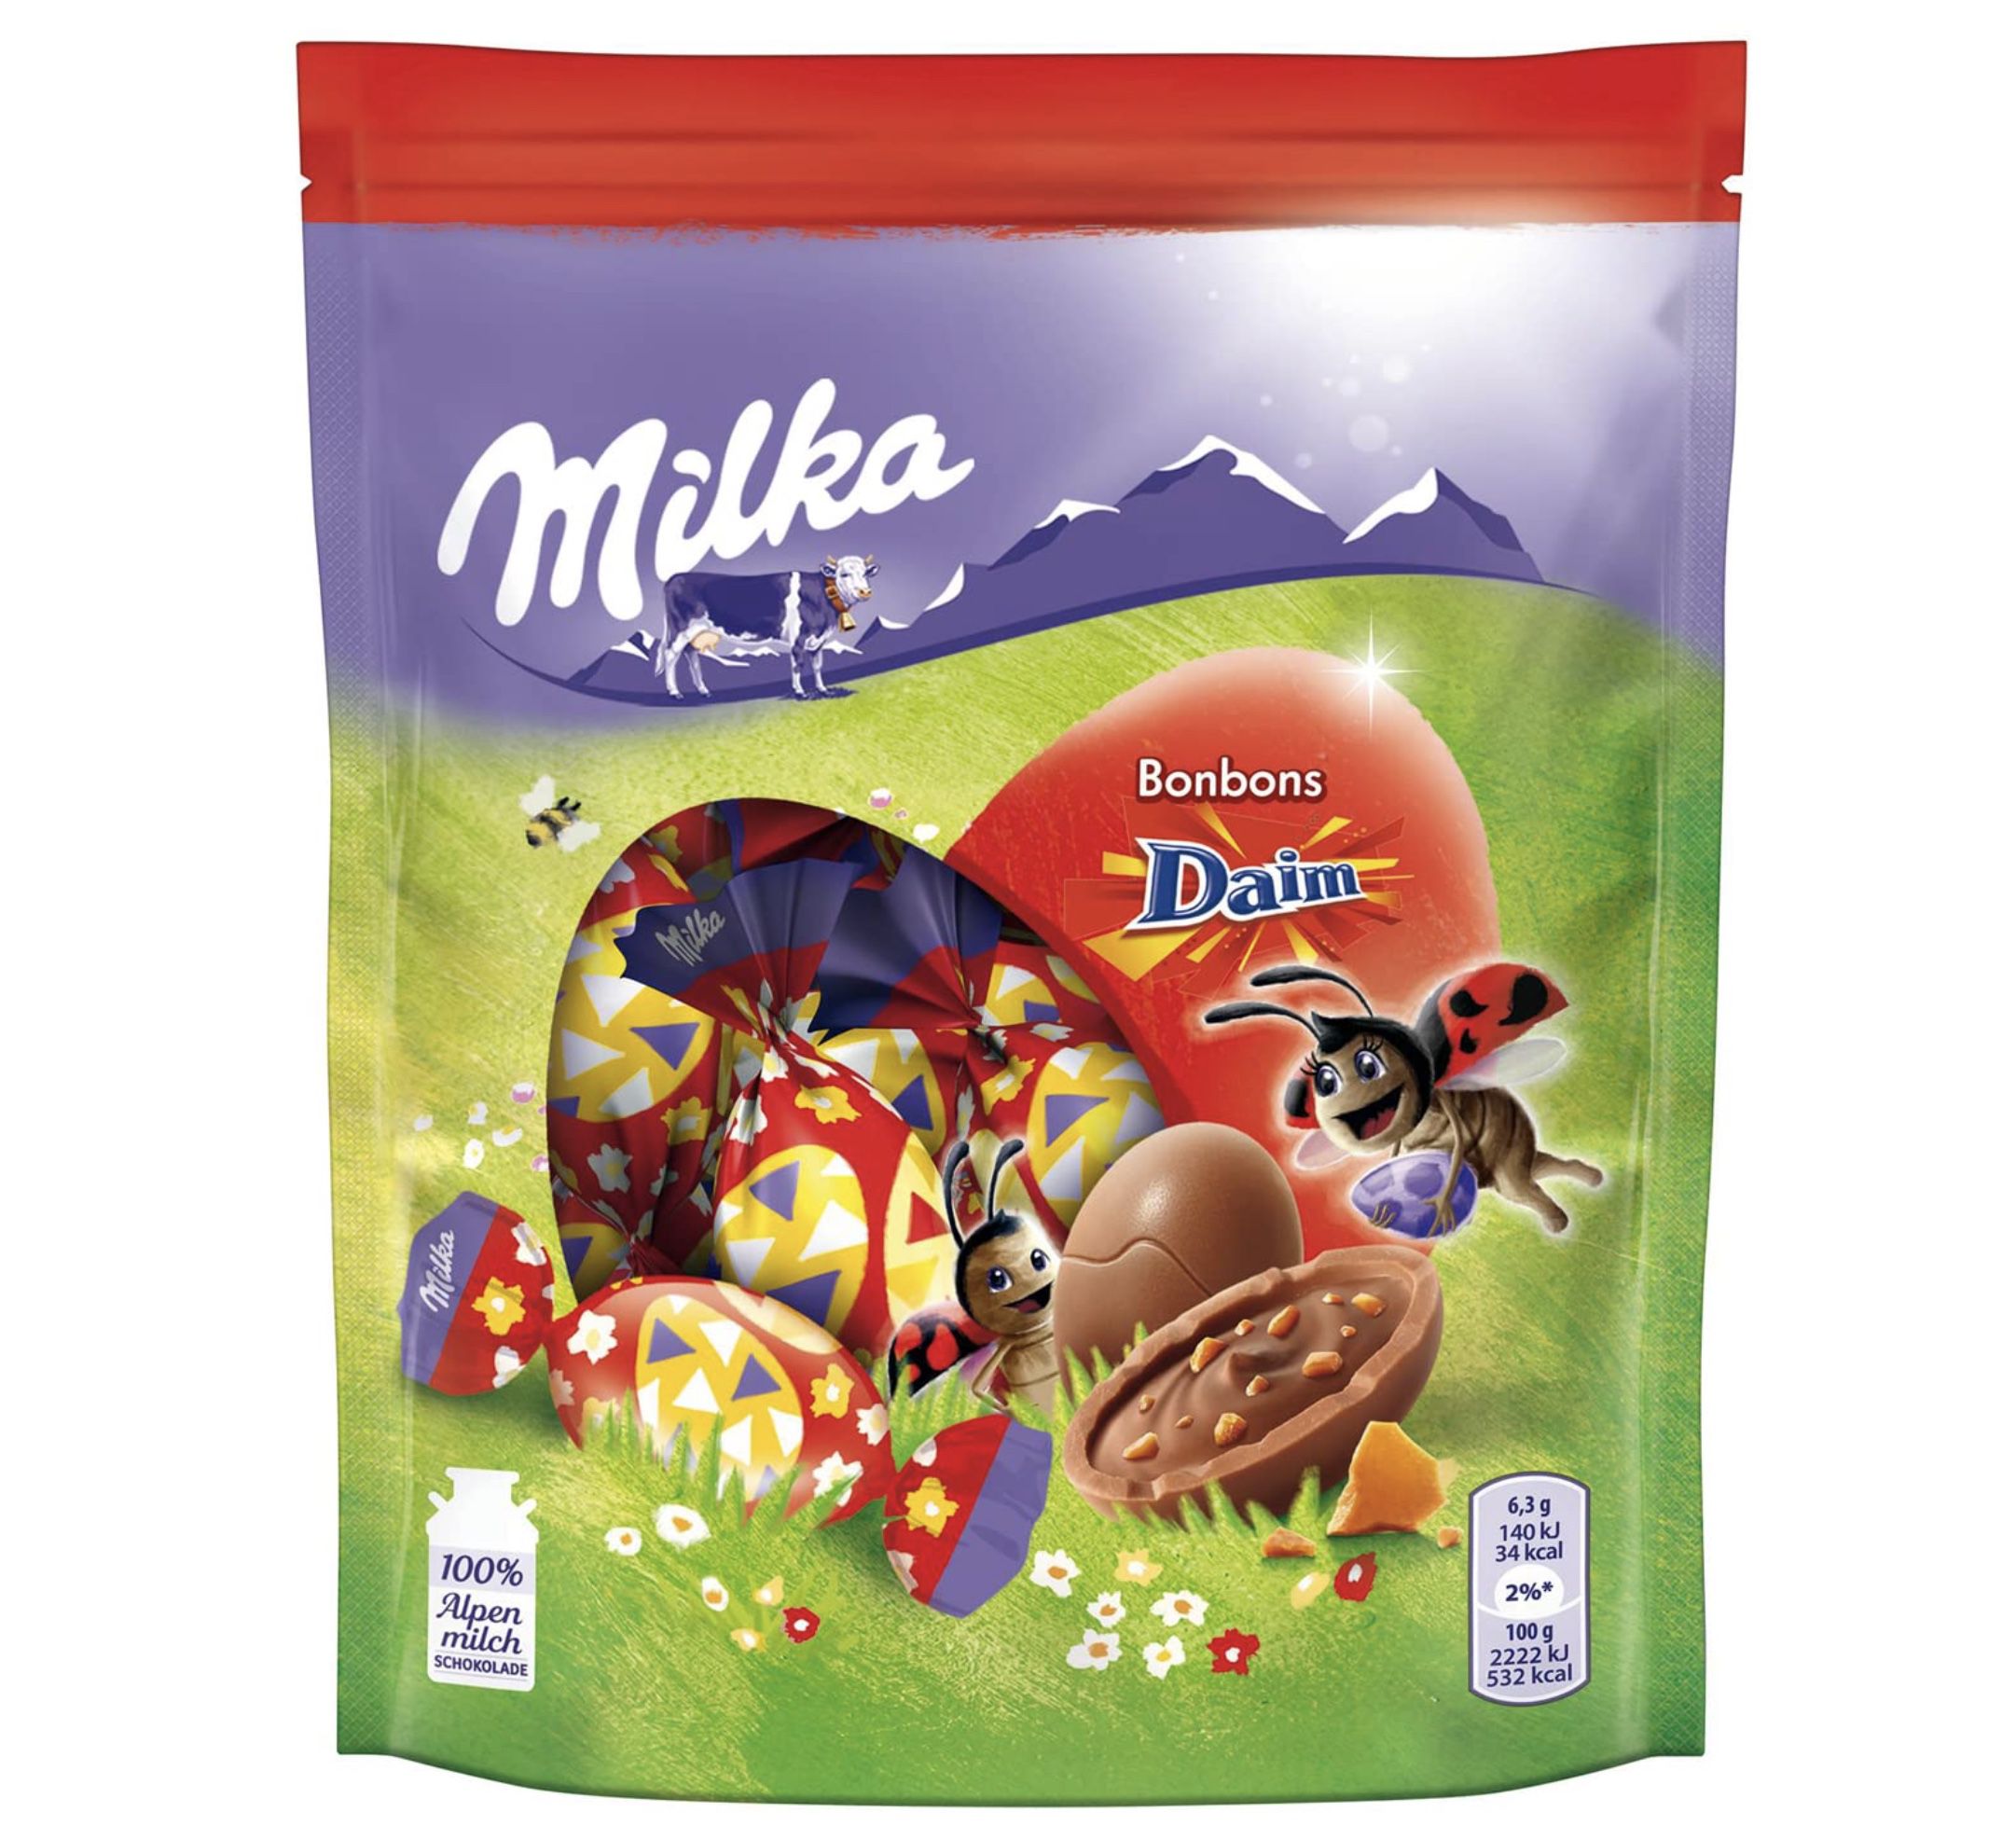 Milka Bonbons mit Daim Stückchen für 1,50€ (statt 3€)   Prime